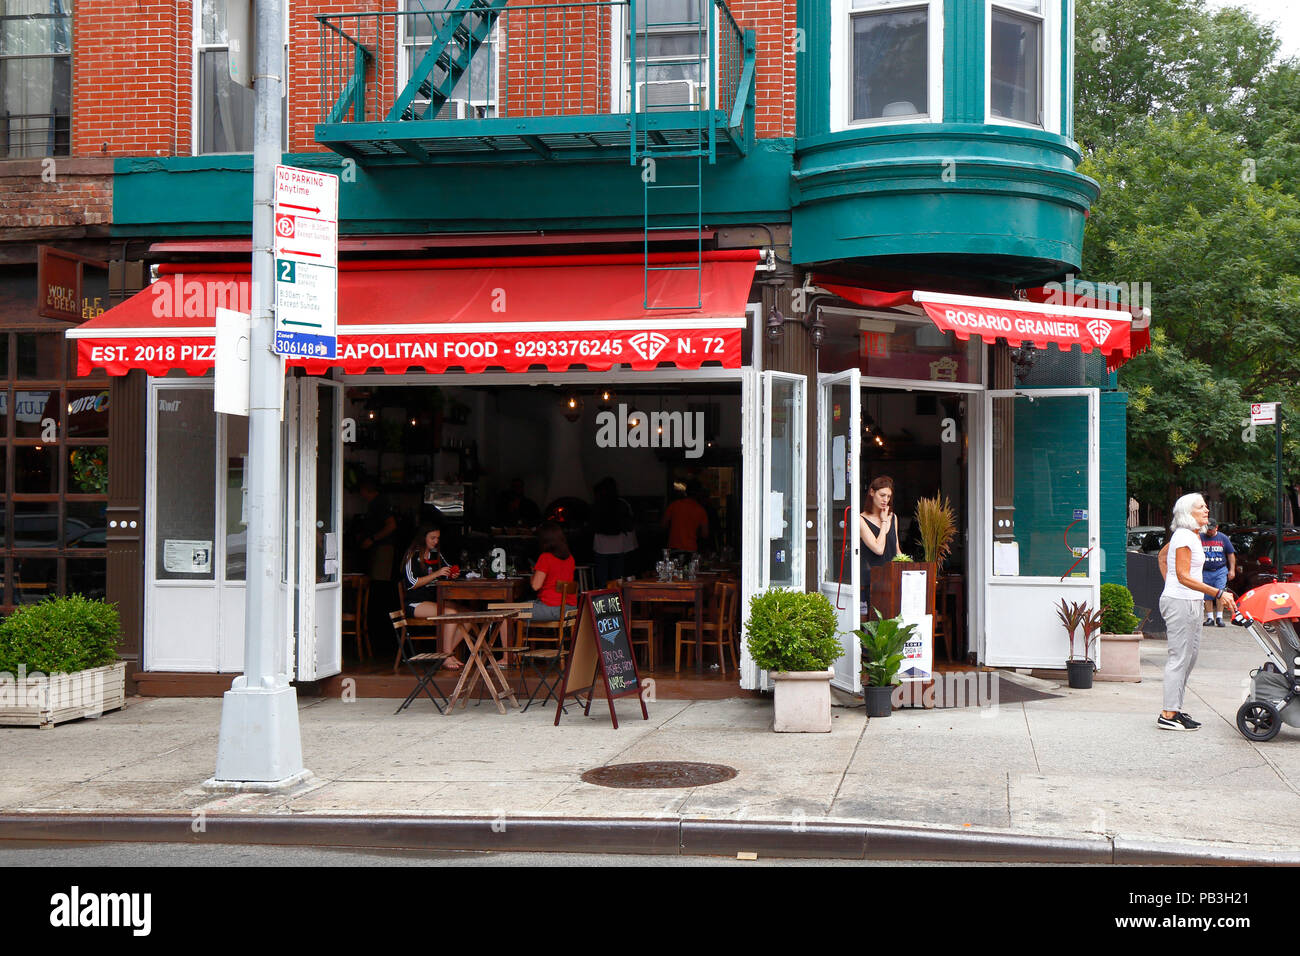 Il segreto della pizza napoletana da alimentare Rosario Granieri, 72 5th Ave, Brooklyn, New York. esterno alla vetrina di un ristorante italiano a Park Slope. Foto Stock